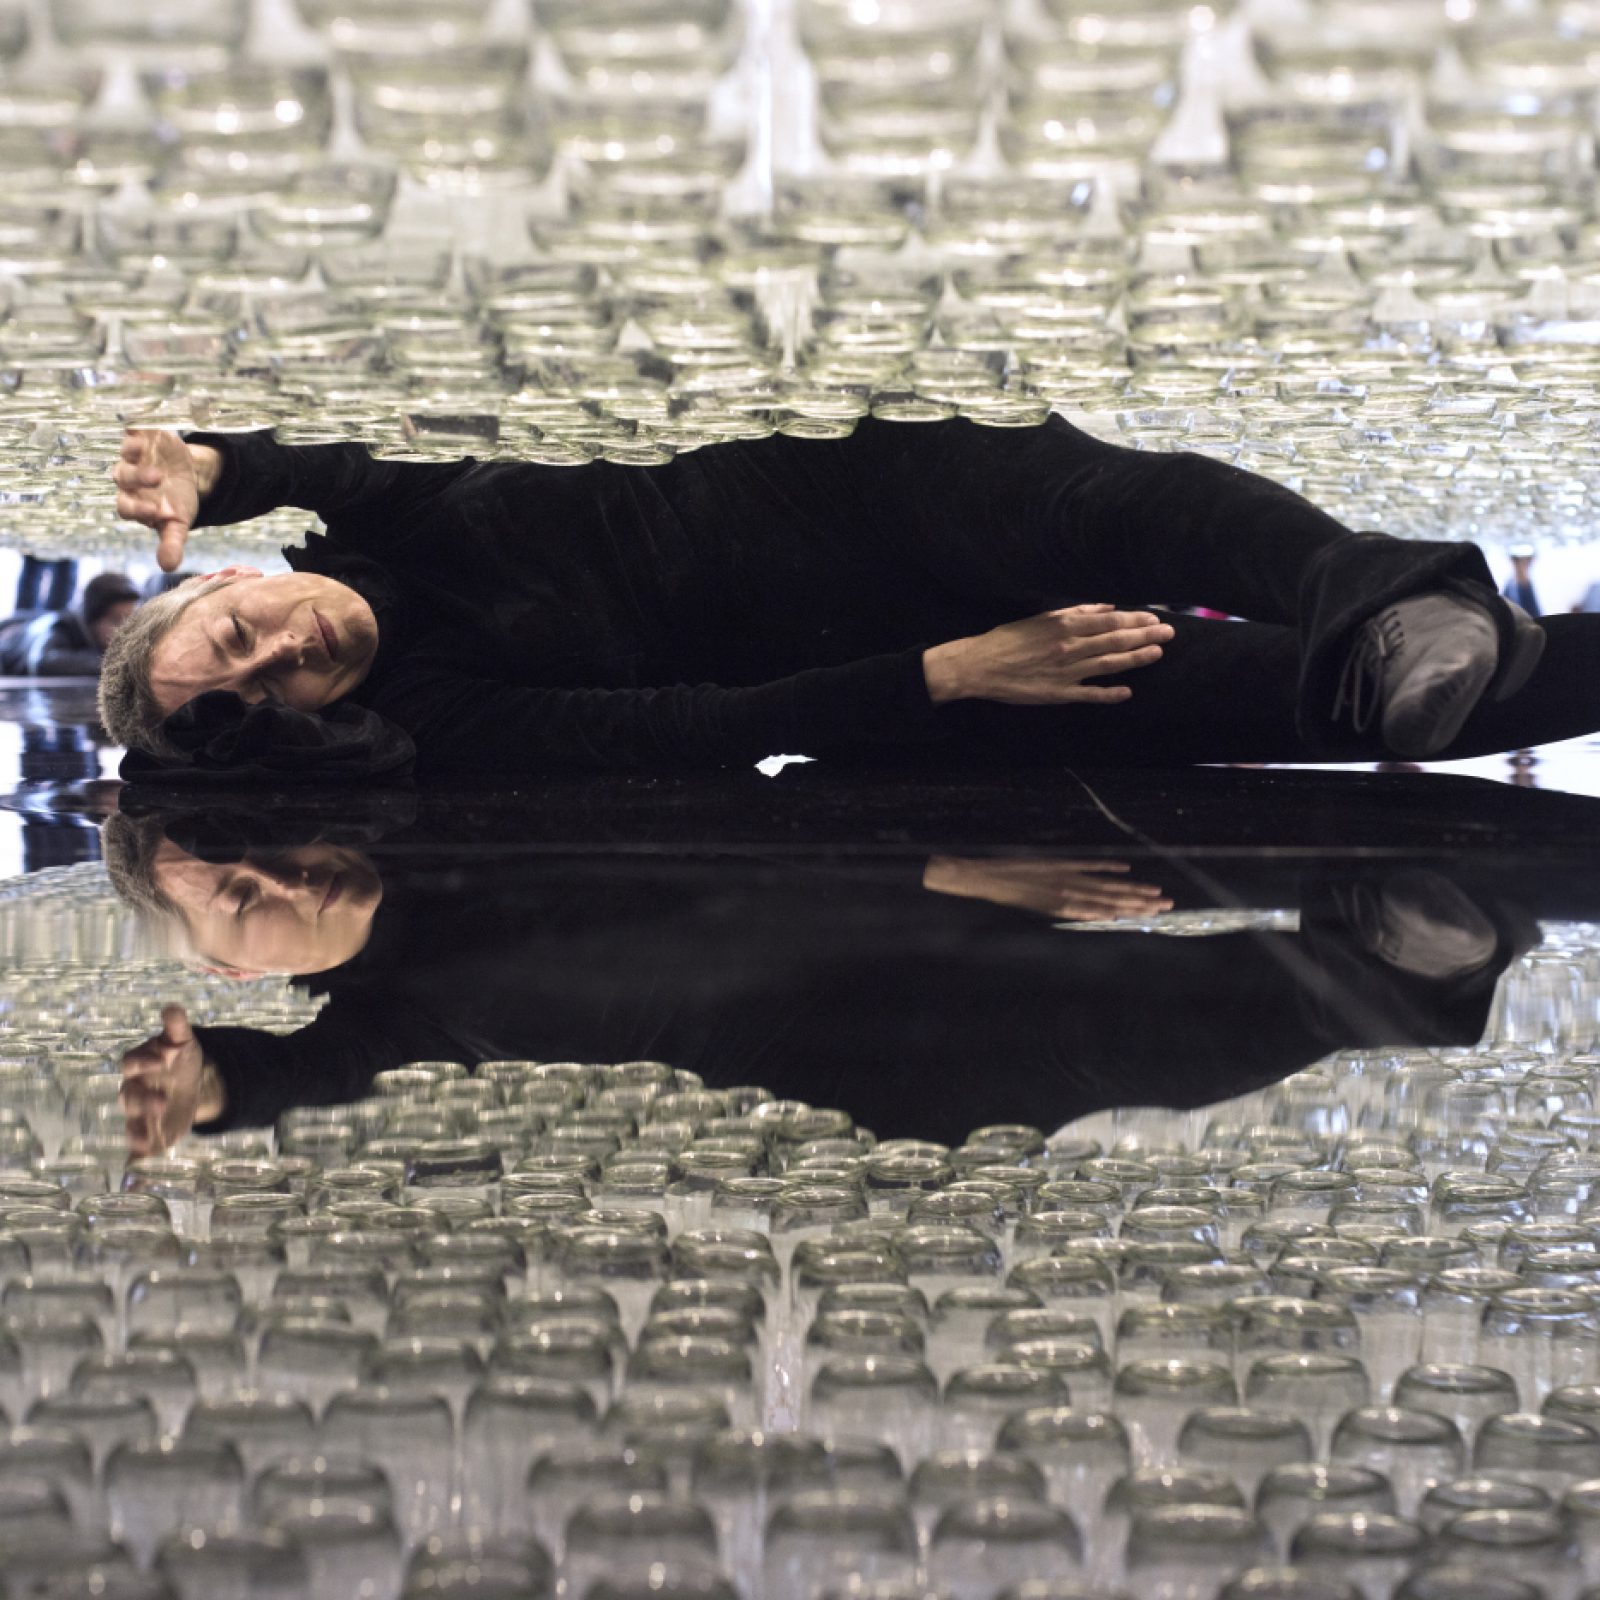 María José Arjona, Línea de vida, 2016, performance de larga duración. Botellas de vidrio, acrílico y cuerdas enceradas. Cortesía de la artista y LARA. Registro realizado en ocasión de su muestra en el Museo de Arte Moderno de Bogotá (Mambo), 2018